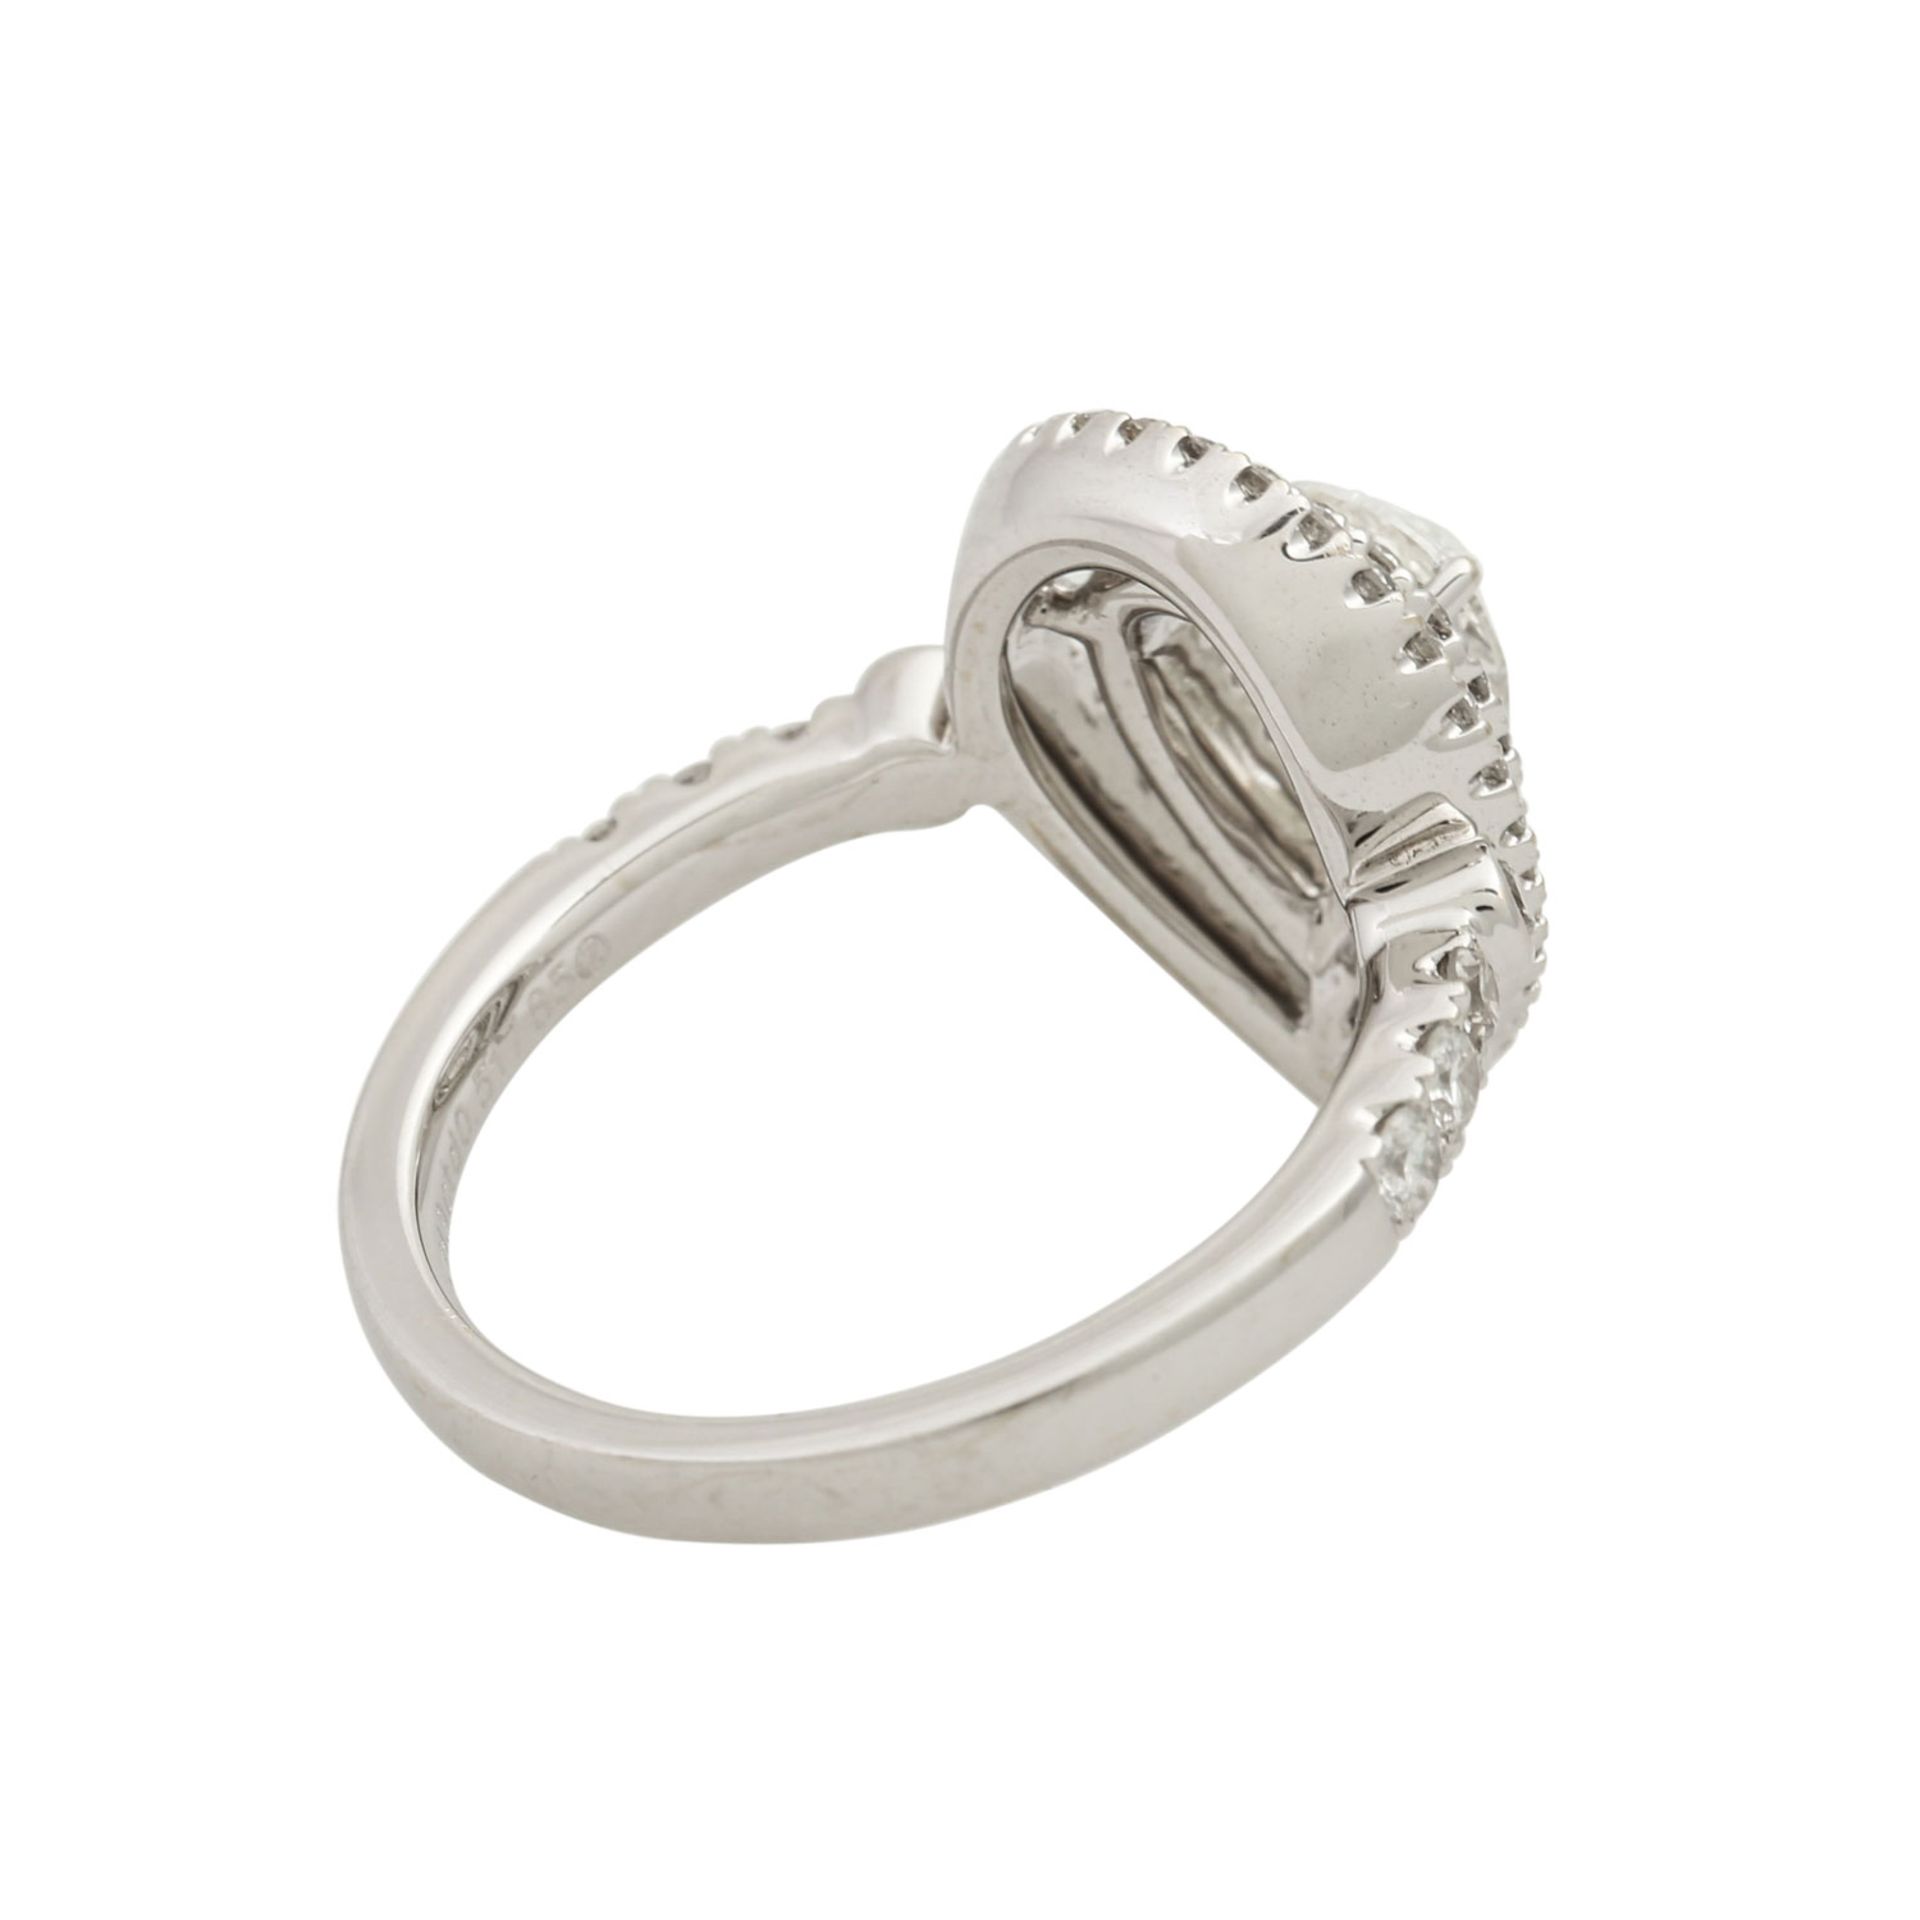 Ring mit Diamanttropfen ca. 0,71 ct,Rosenschliff, ca. LGW (I-J)/P1, weitere kleine Bri - Bild 4 aus 4